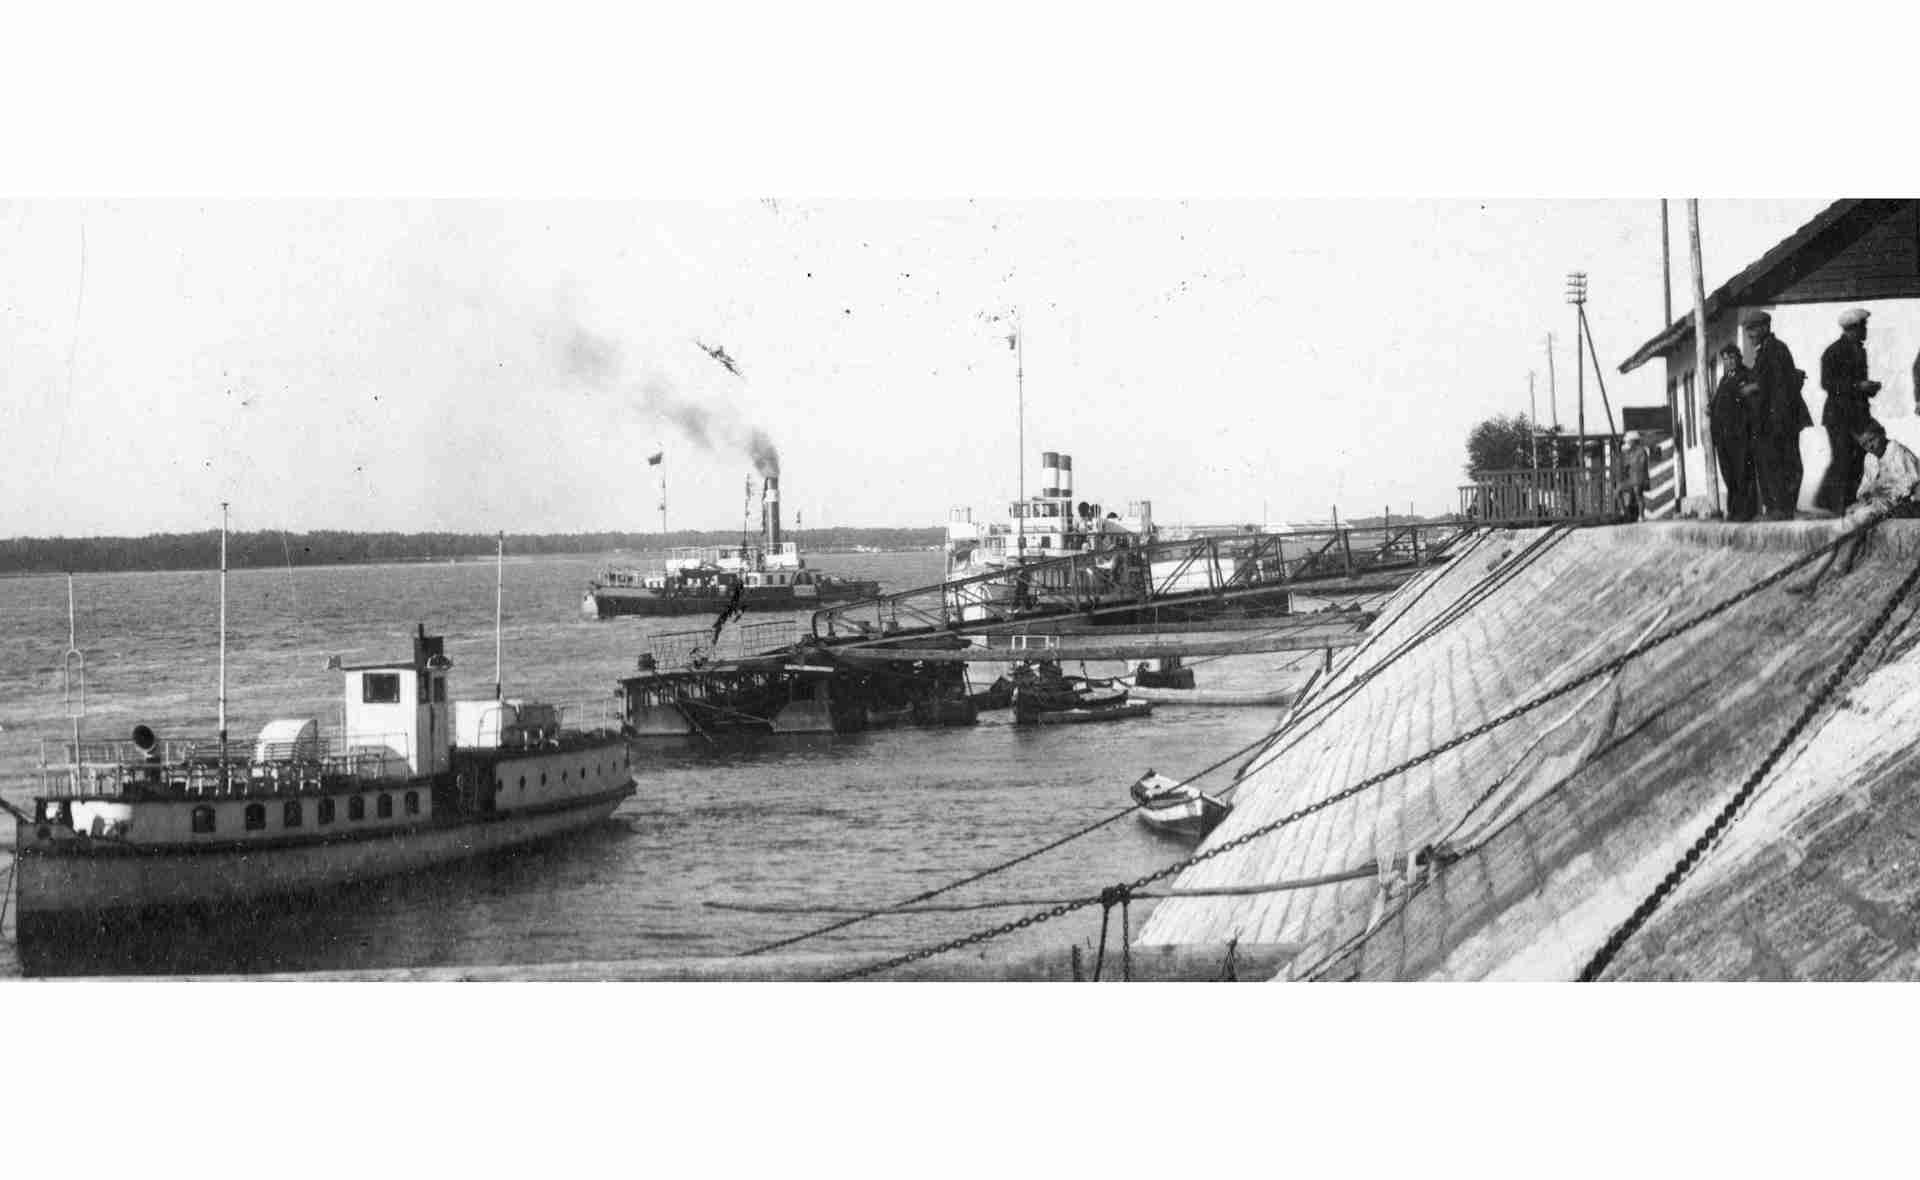 Rusze 1937, Az MFTR ERZSÉBET KIRÁLYNÉ (1896) gőzhajó Rusze kikötőjében hátul.